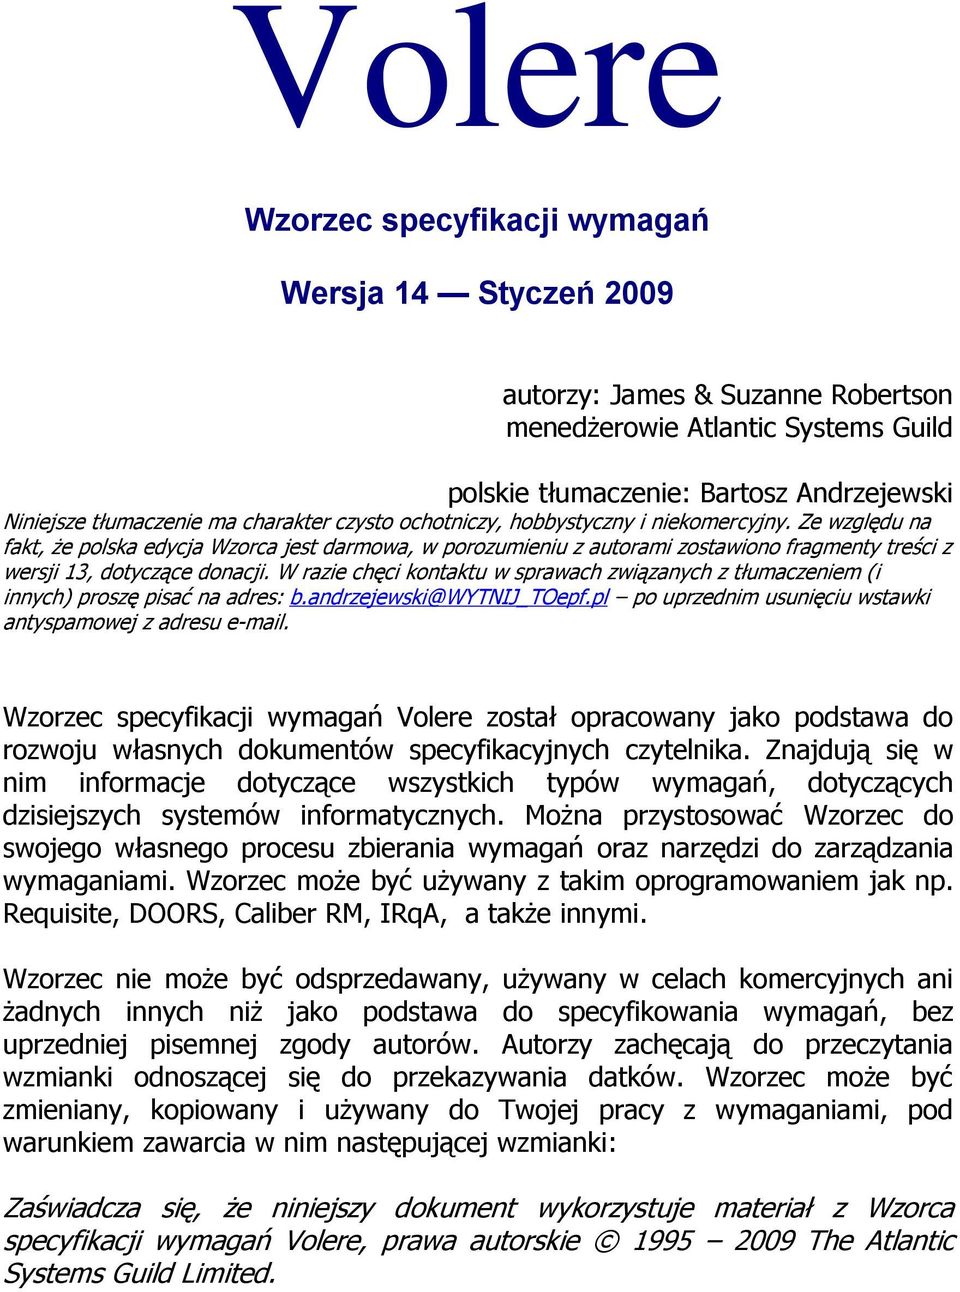 Ze względu na fakt, że polska edycja Wzorca jest darmowa, w porozumieniu z autorami zostawiono fragmenty treści z wersji 13, dotyczące donacji.